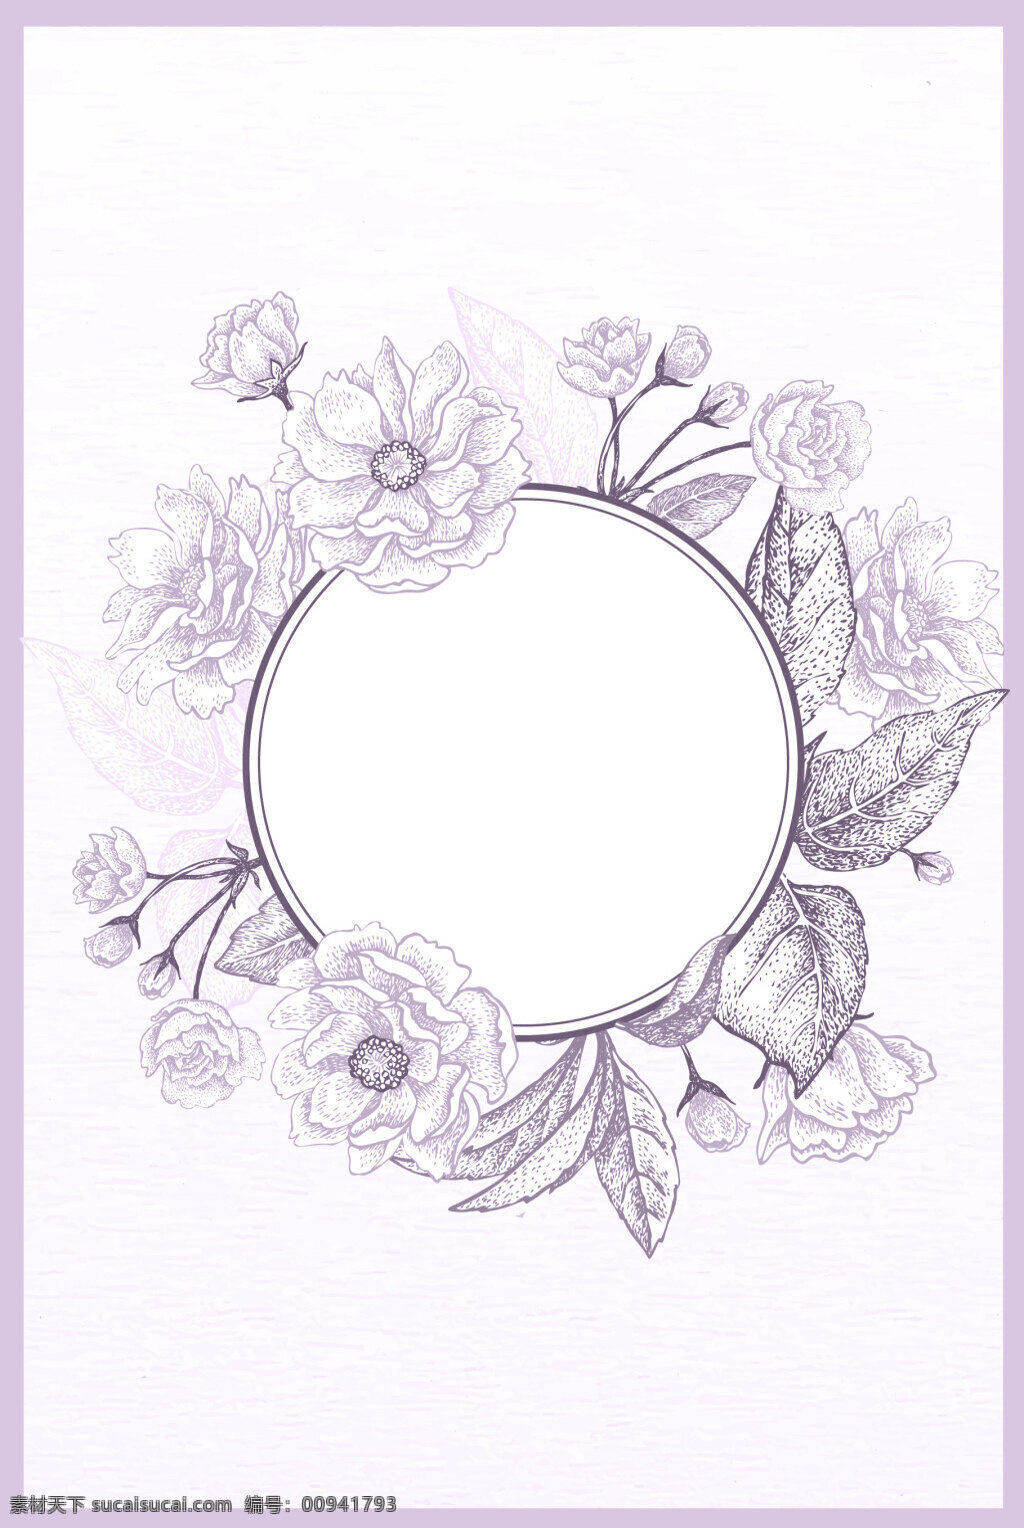 方框 复古 花朵 花环 花卉 婚礼 婚庆 欧式边框 清新 矢量 文艺 线描 背景 手绘 文艺边框